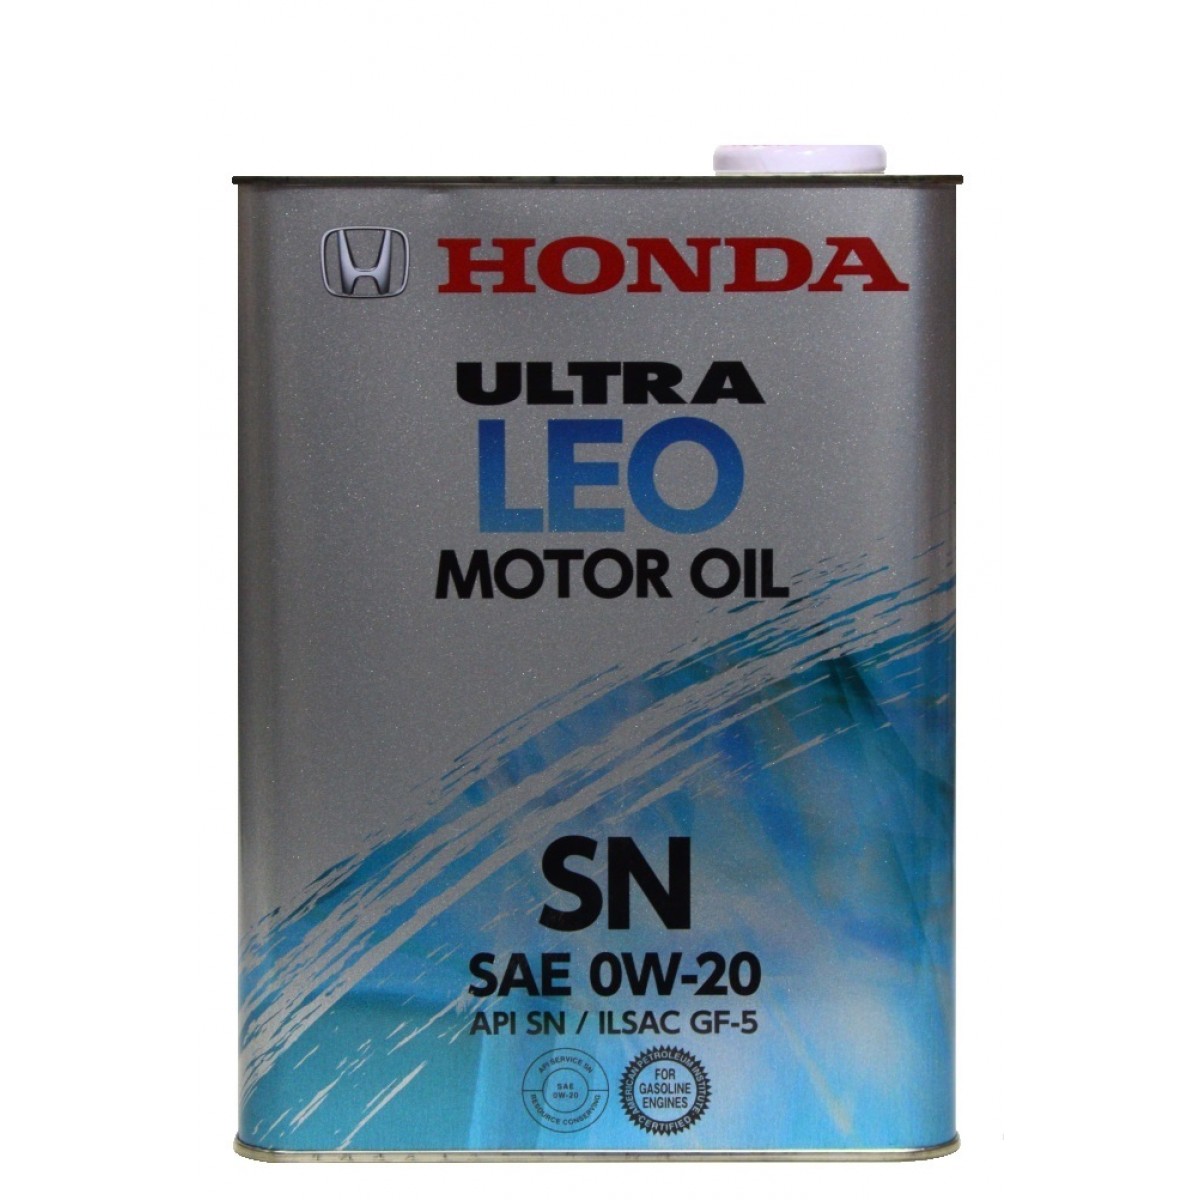 Моторные масла honda купить. Honda Ultra Leo 0w20 SN. Honda 0w20 SP. Масло Honda Leo 0w20. Honda Ultra Leo SP 0w-20 (20,0).